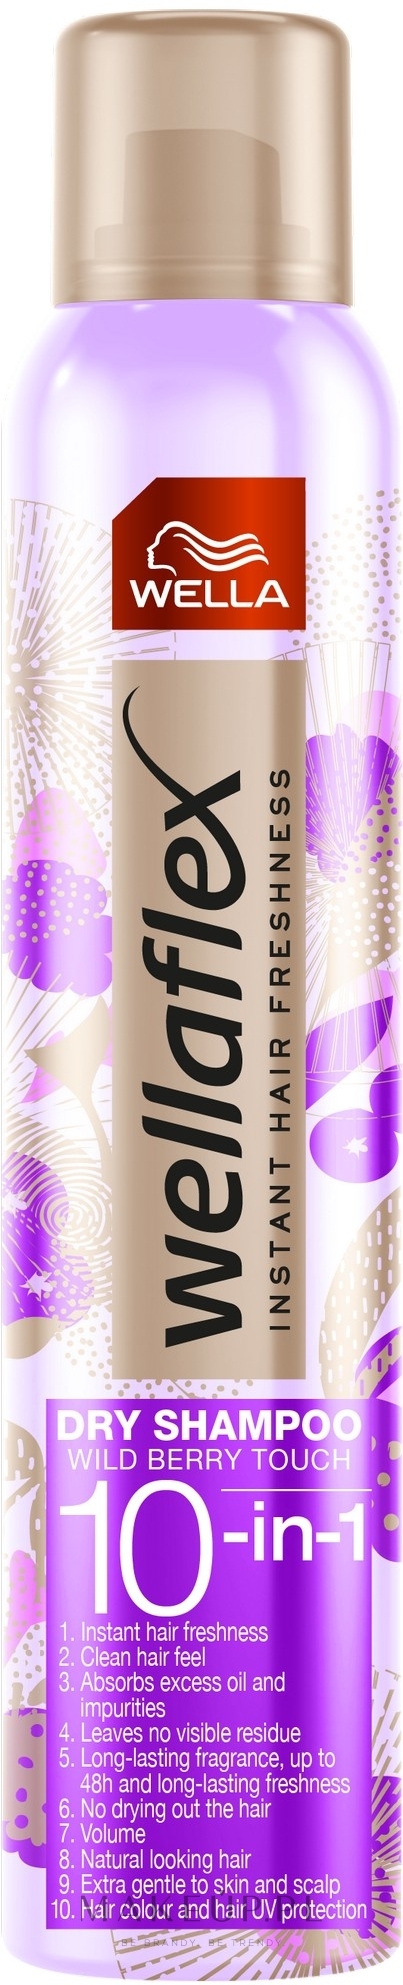 Suchy szampon do włosów - Wella Wellaflex Wild Berries 10-in-1 Dry Shampoo — Zdjęcie 180 ml